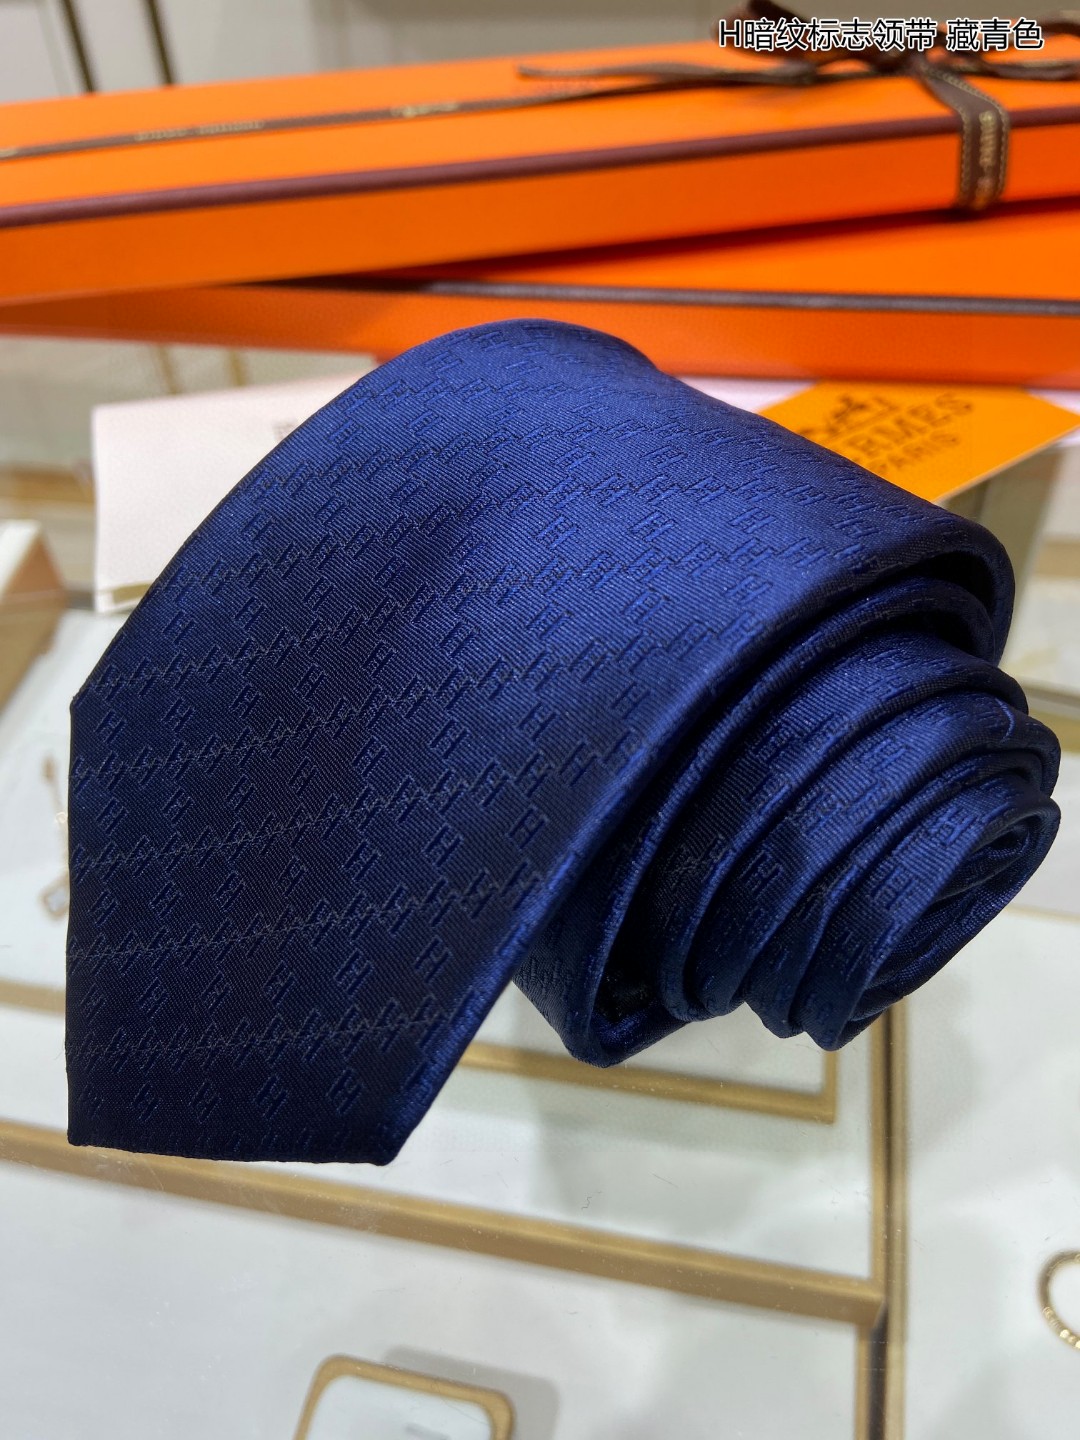 男士新款领带系列H暗纹标志领带稀有H家每年都有一千条不同印花的领带面世从最初的多以几何图案表现骑术活动为